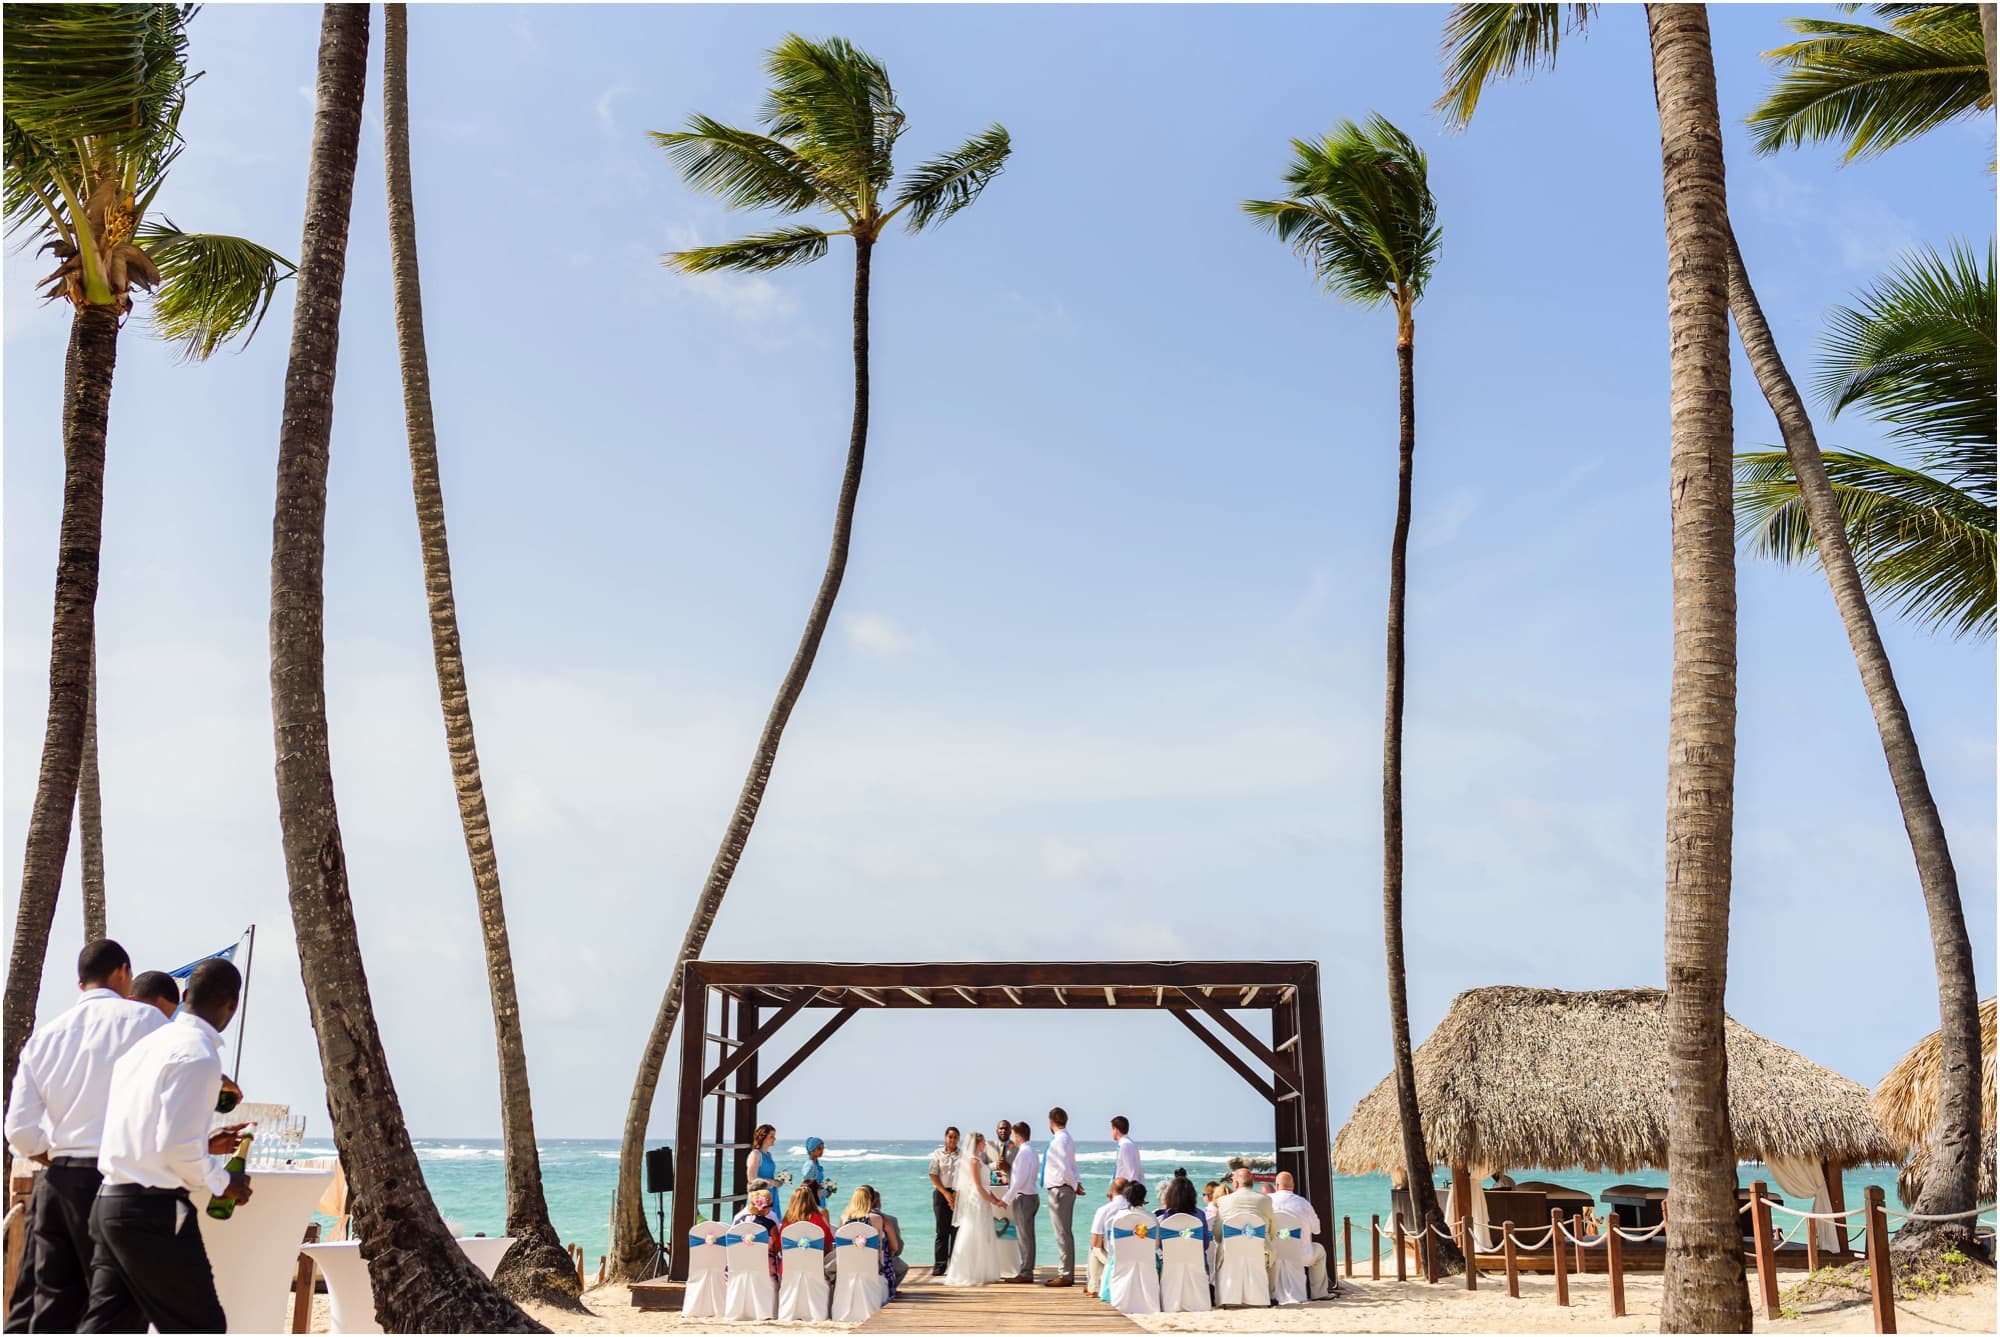 Wedding ceremony on the beach at Royalton Punta Cana